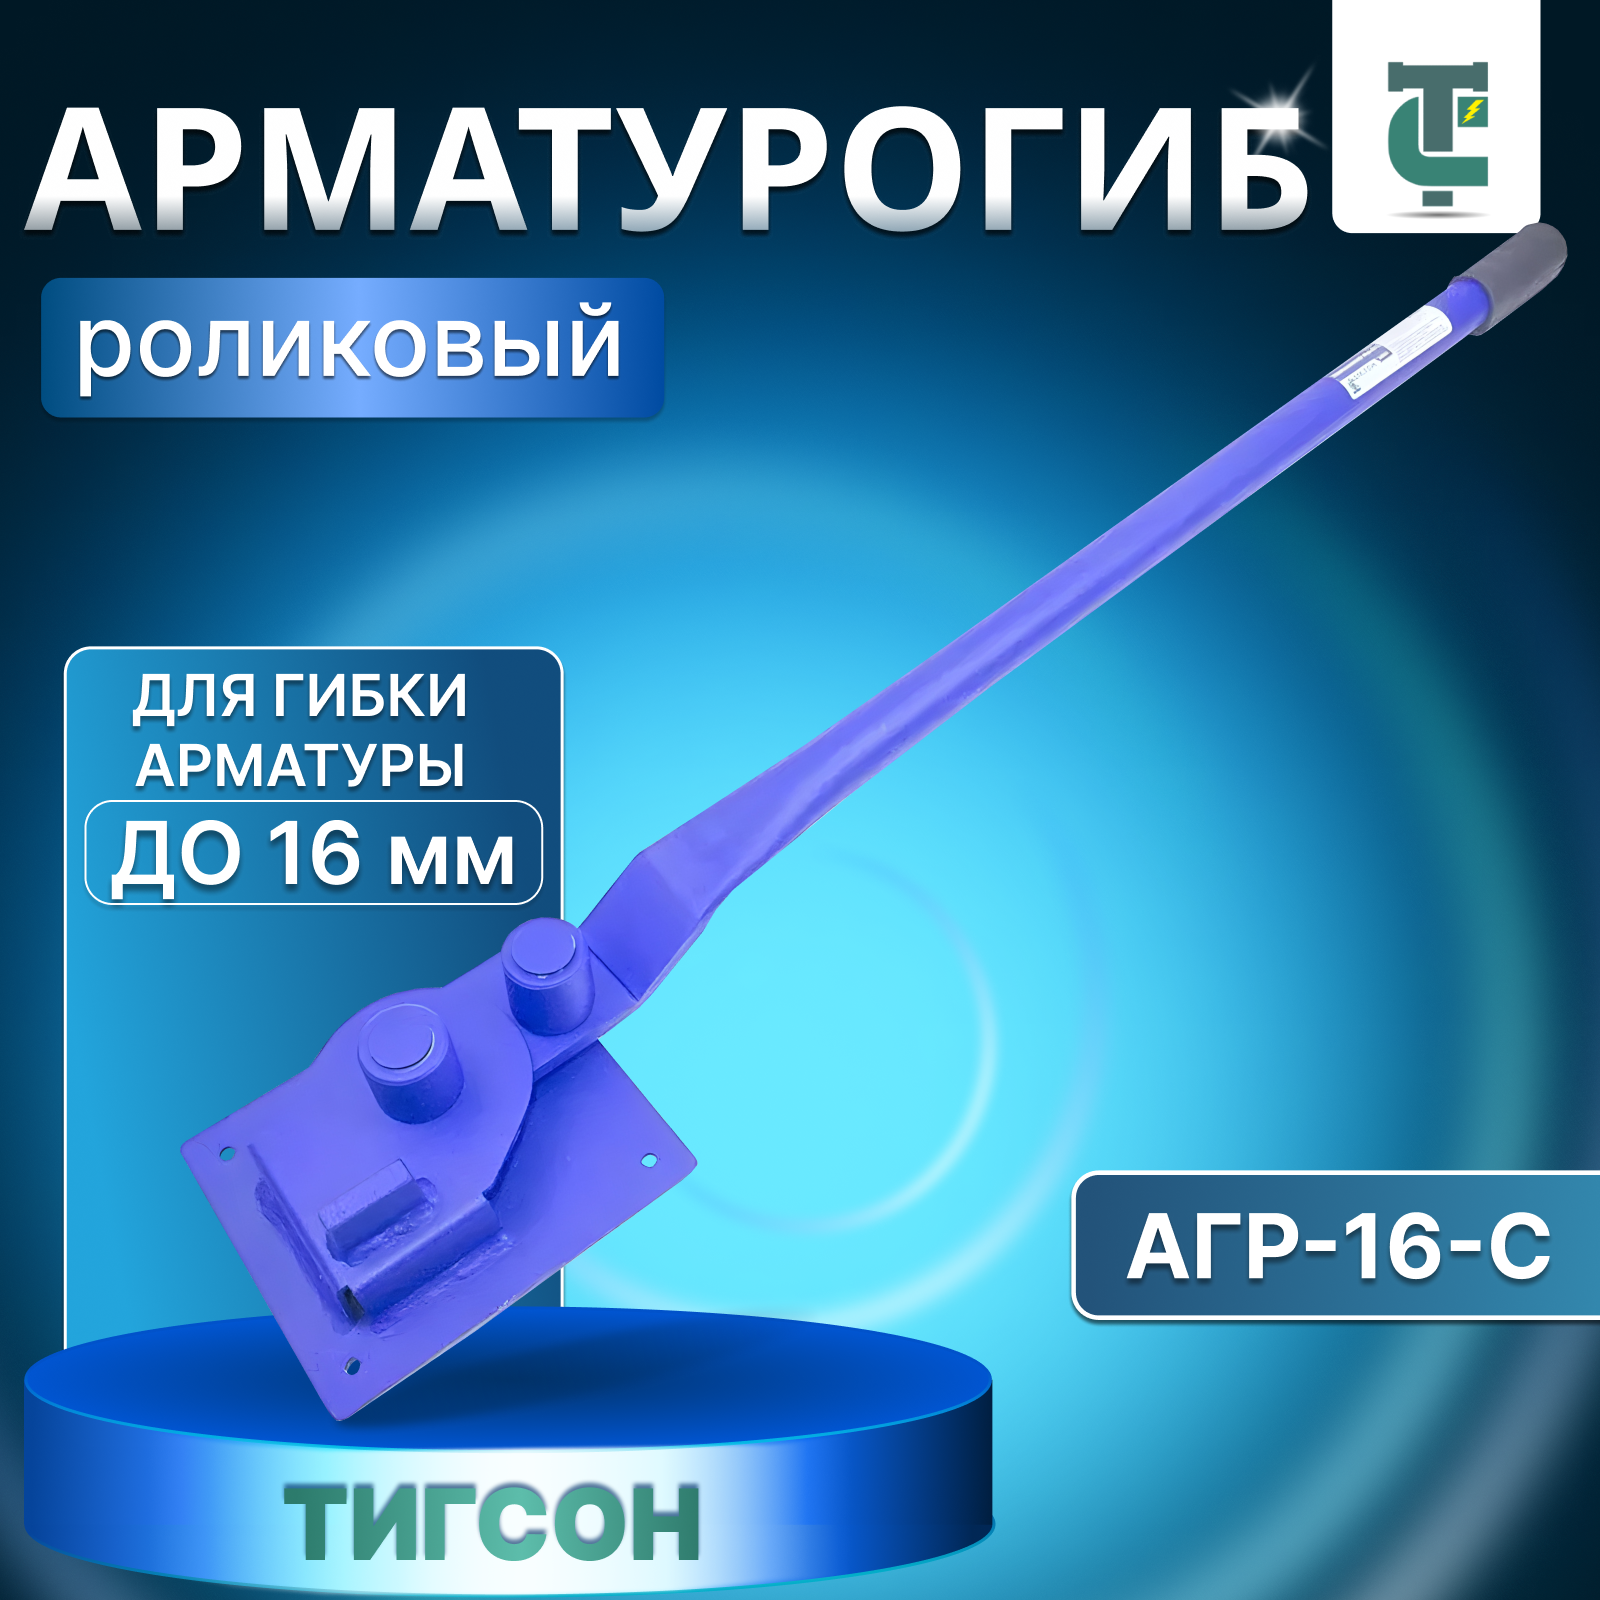 Арматурогиб роликовый ручной тигсон АГР-16-С до 16 мм